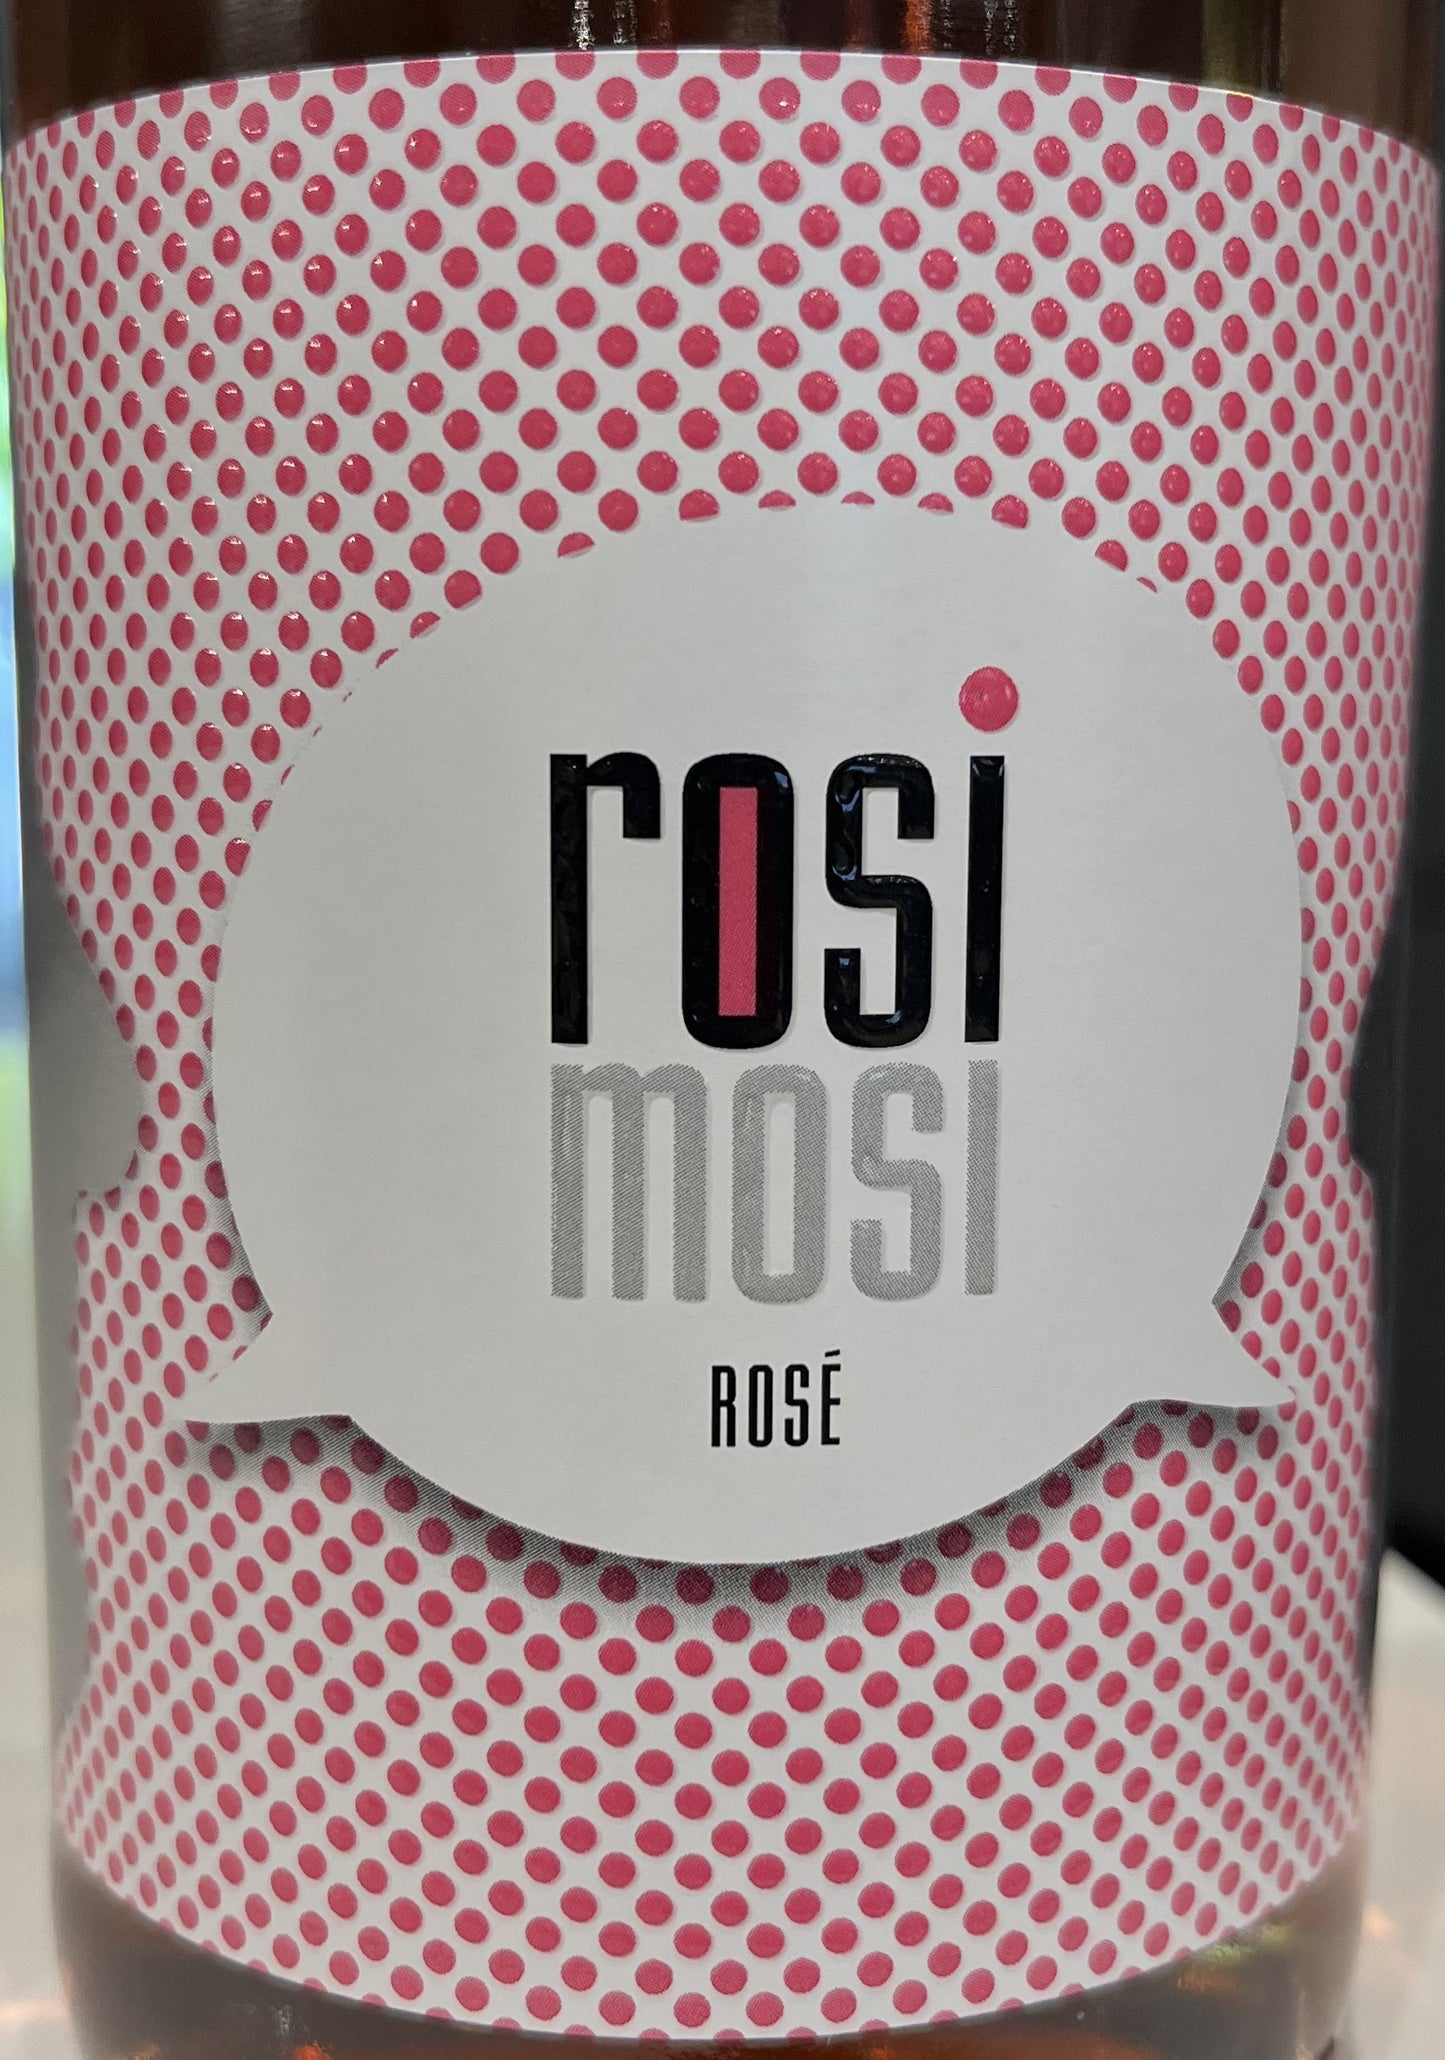 Hermann Moser  'Rosi Mosi'  Rose